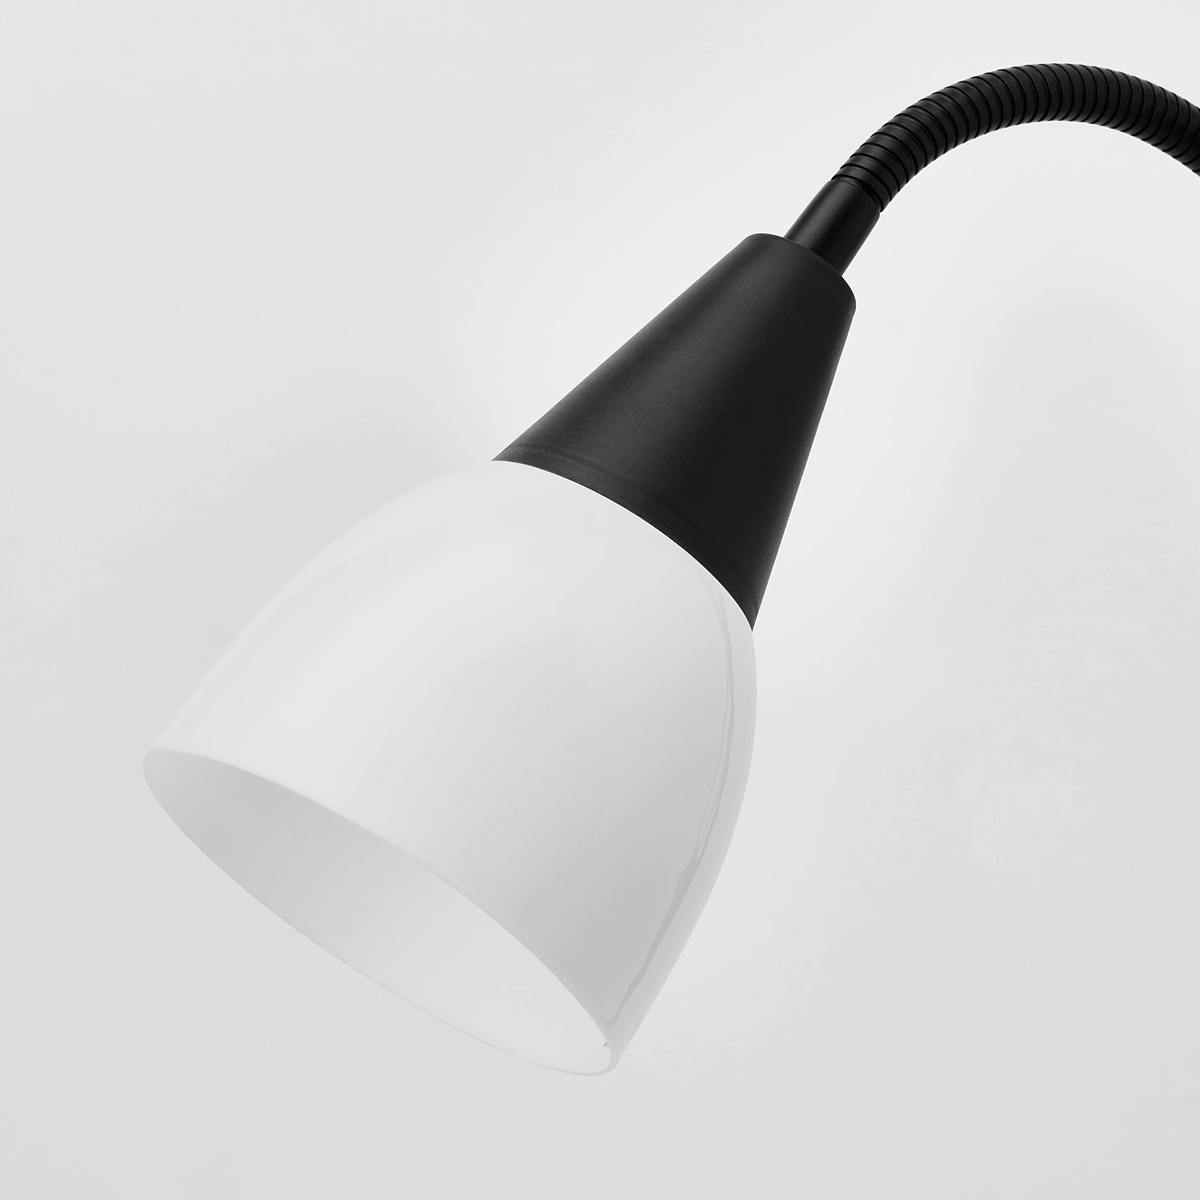 TAGARP 178cm podna lampa sa dodatkom za citanje, crna/bijela